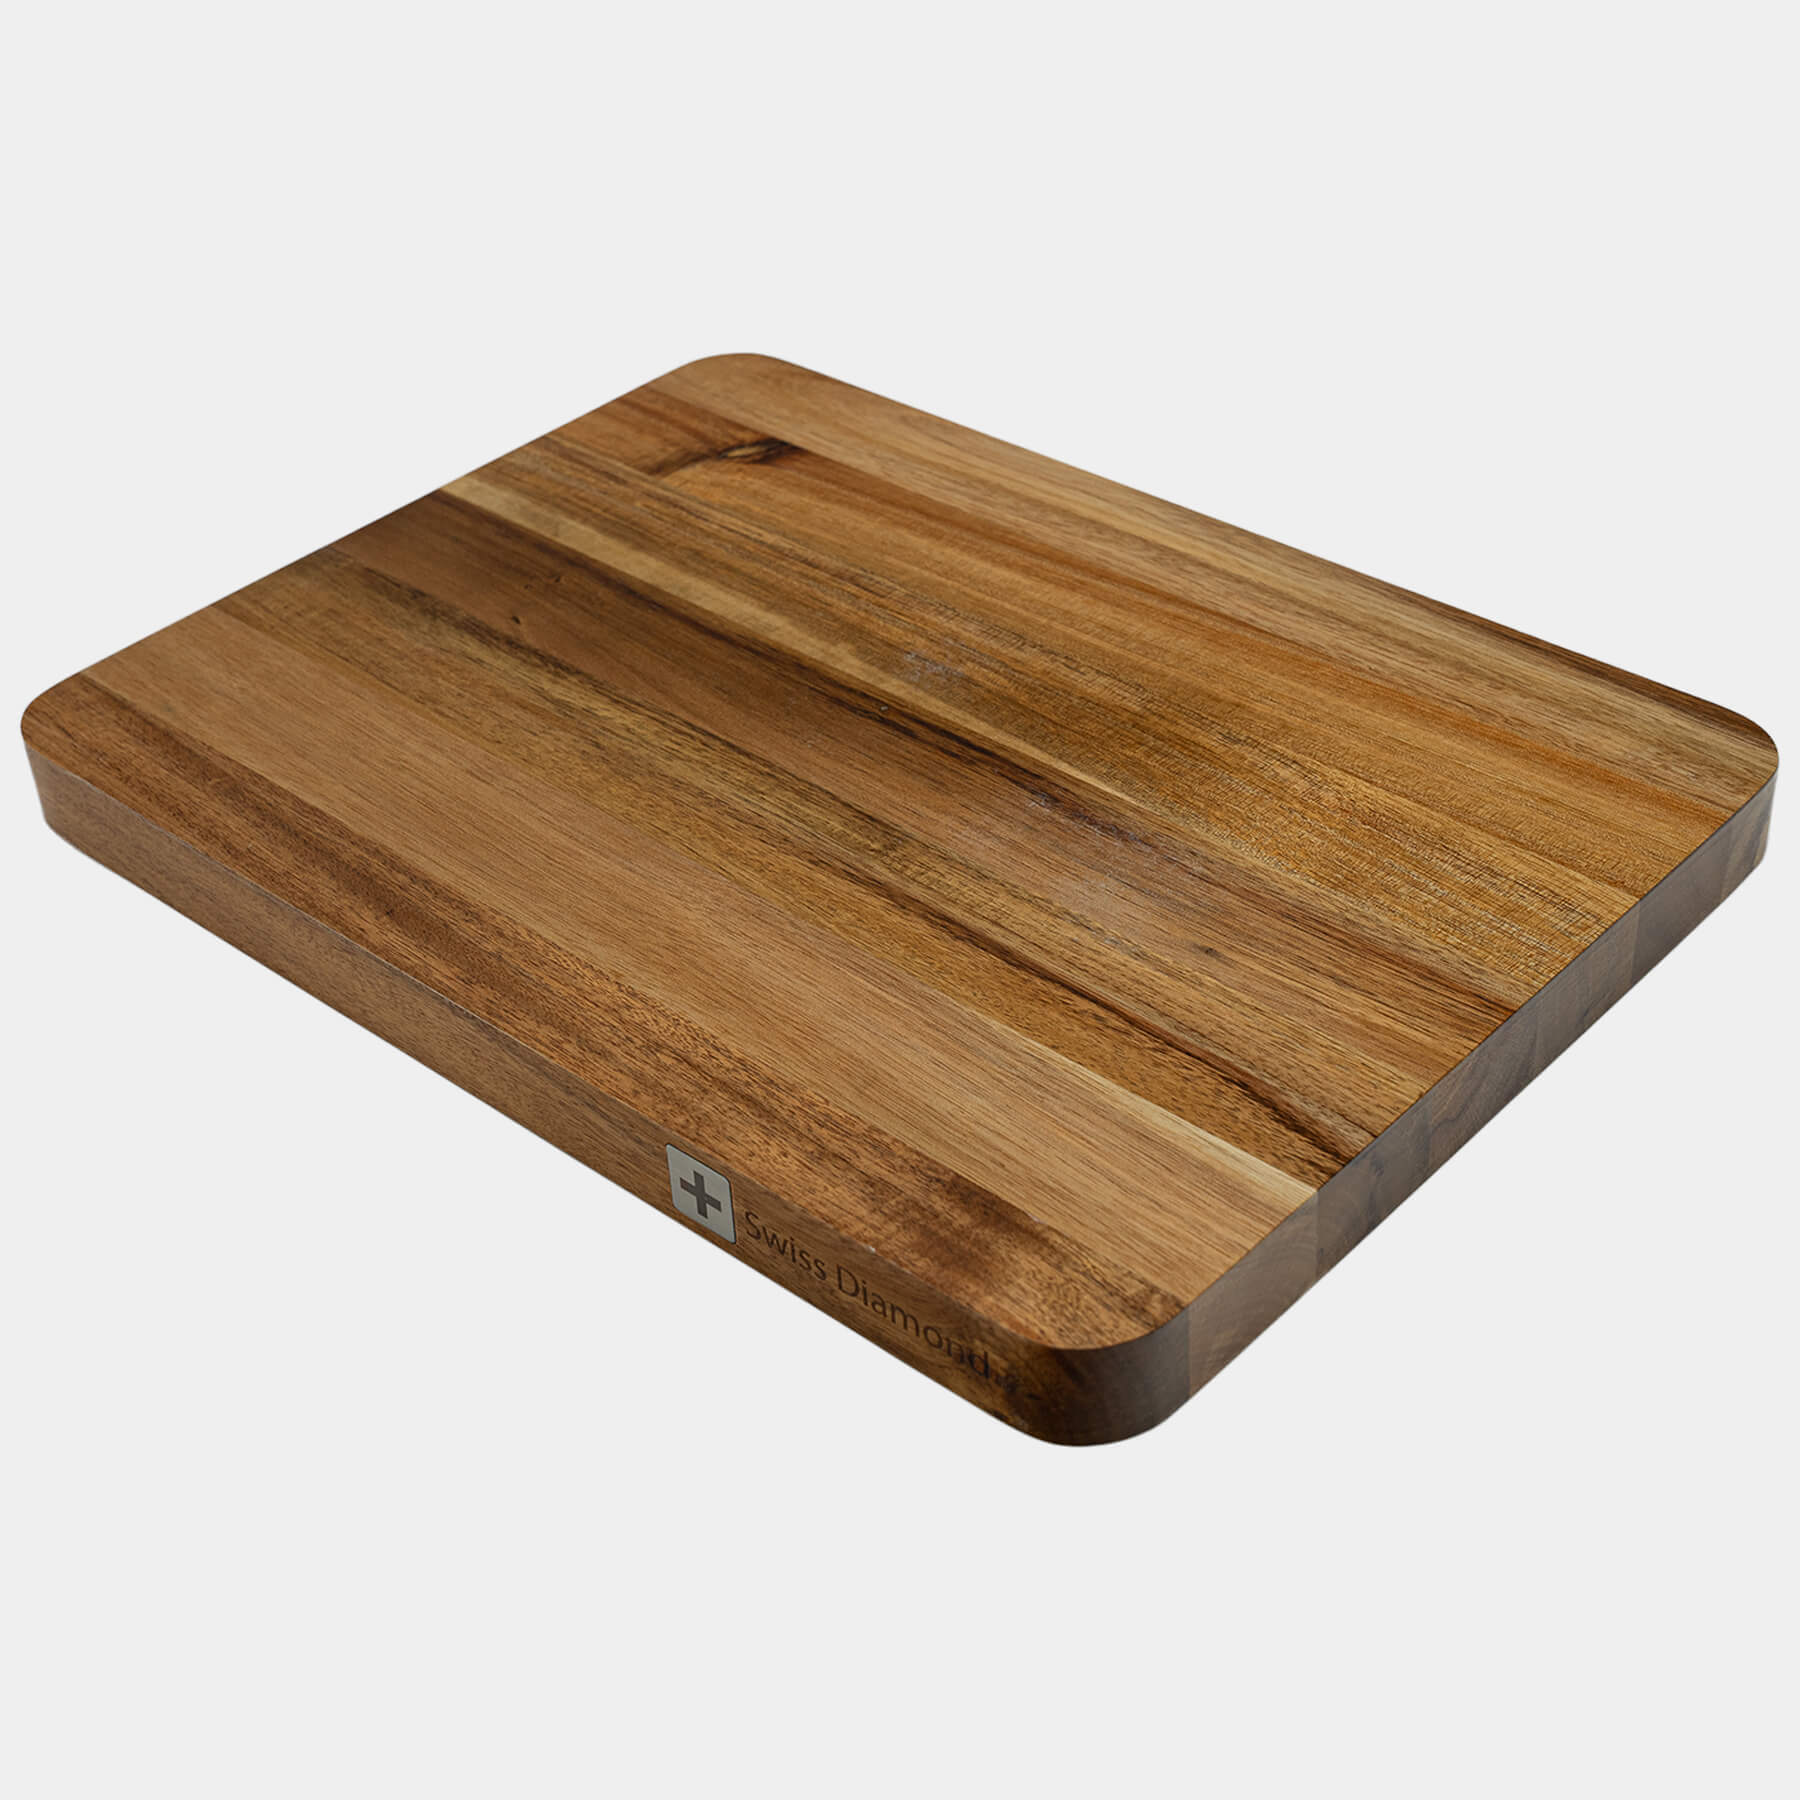 16" Acacia Wood Cutting Board at an angle